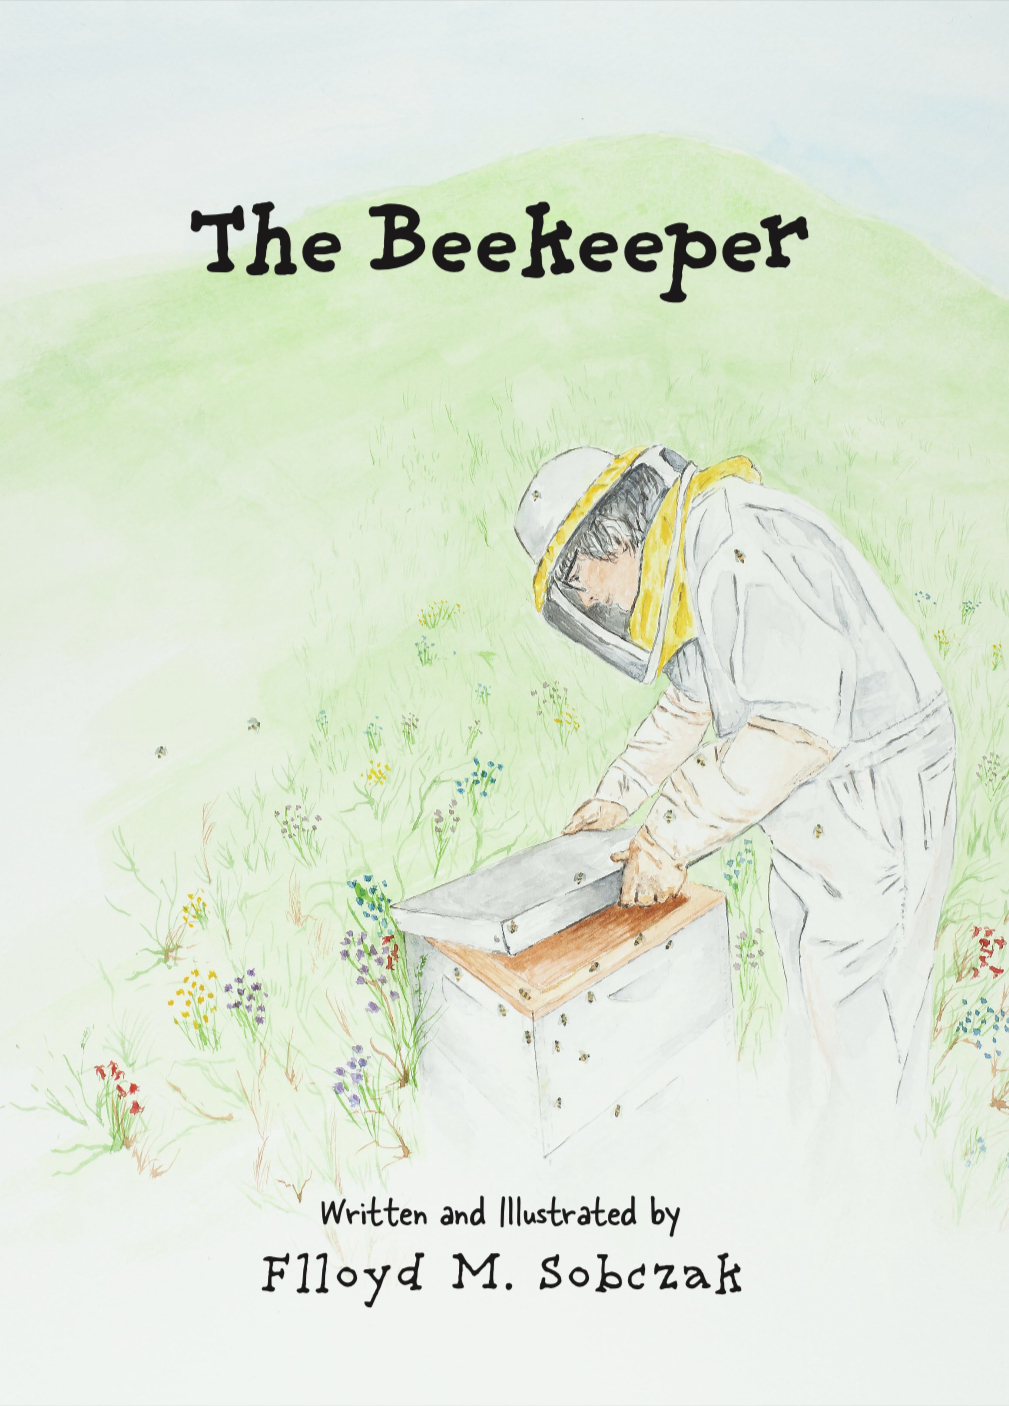 Book "The Beekeeper" by Flloyd Sobczak